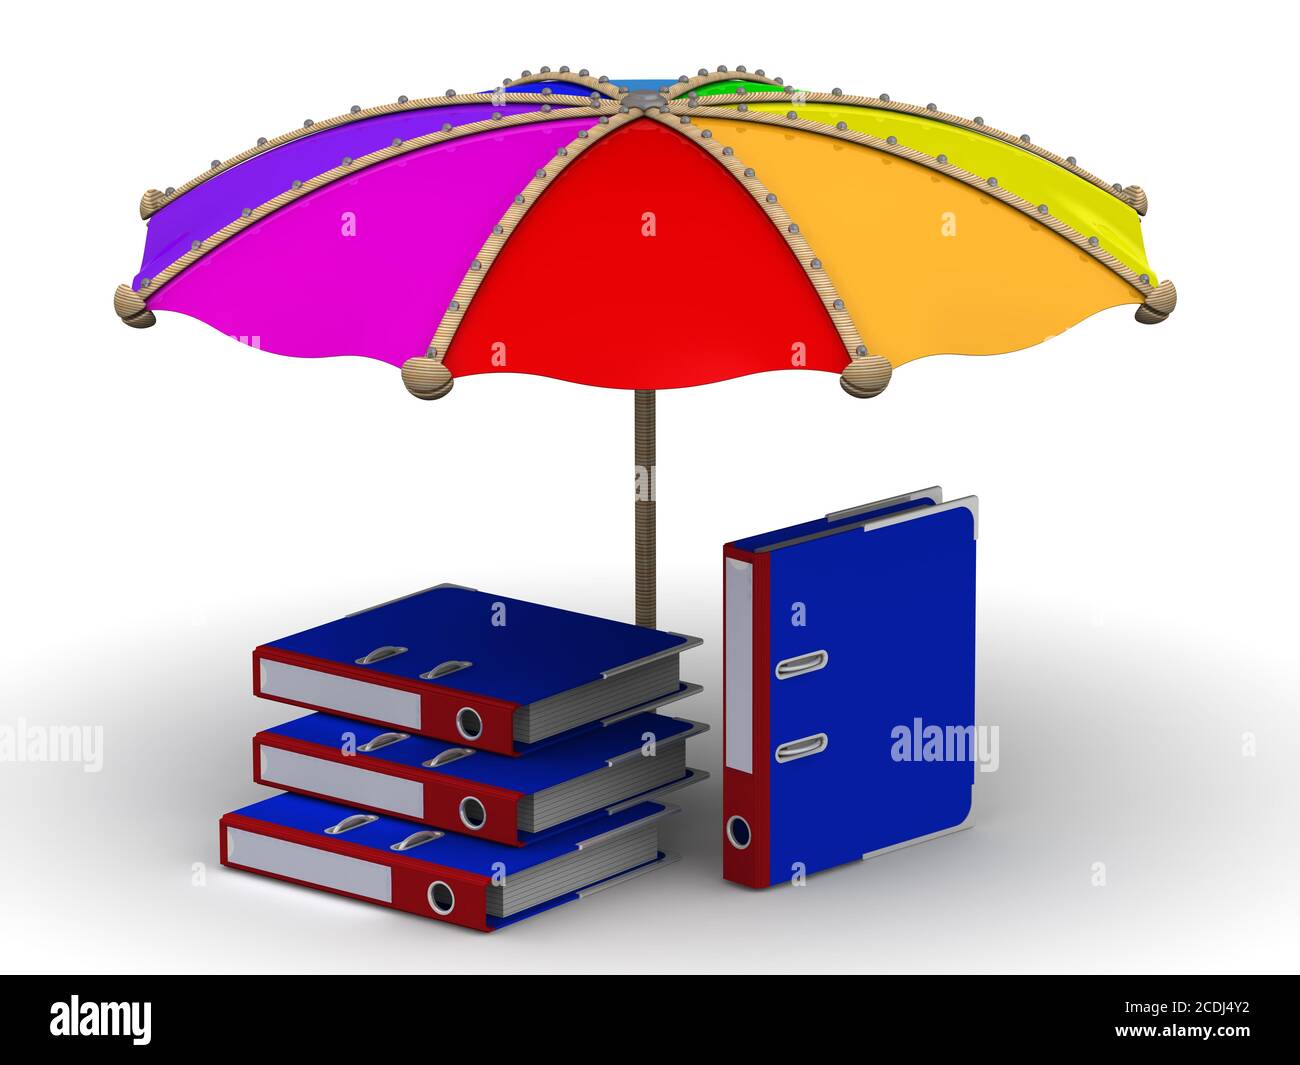 Protection des données. Les chemises en anneau se trouvent sous le parasol sur une surface blanche. Illustration 3D Banque D'Images